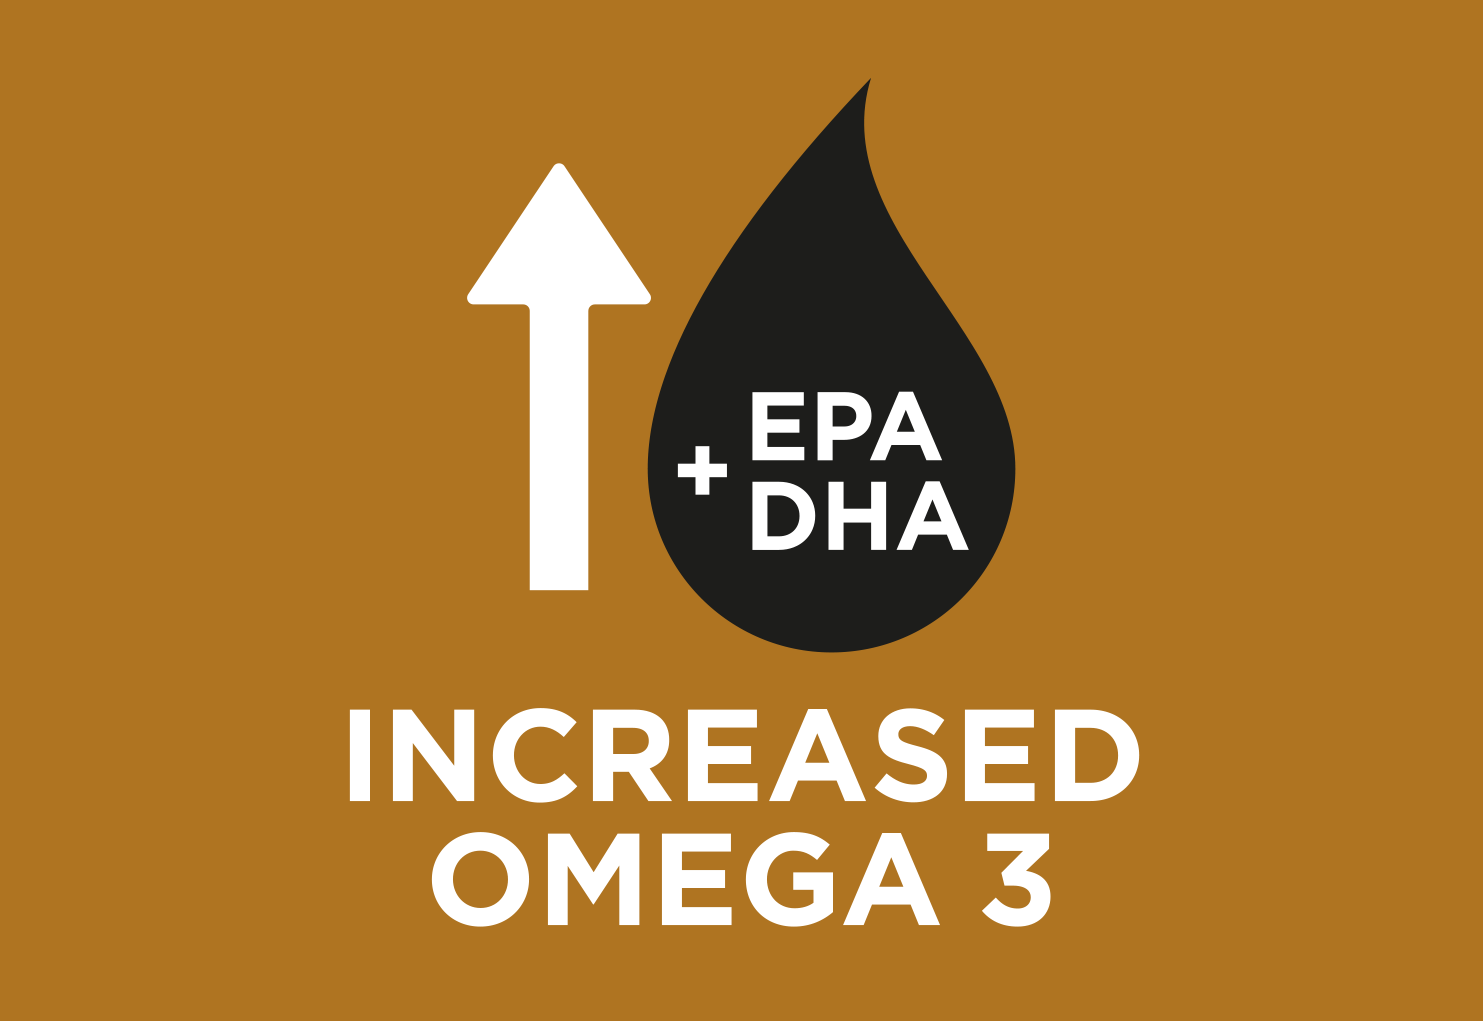 Artırılmış omega 3 yağ asidi düzeyleri